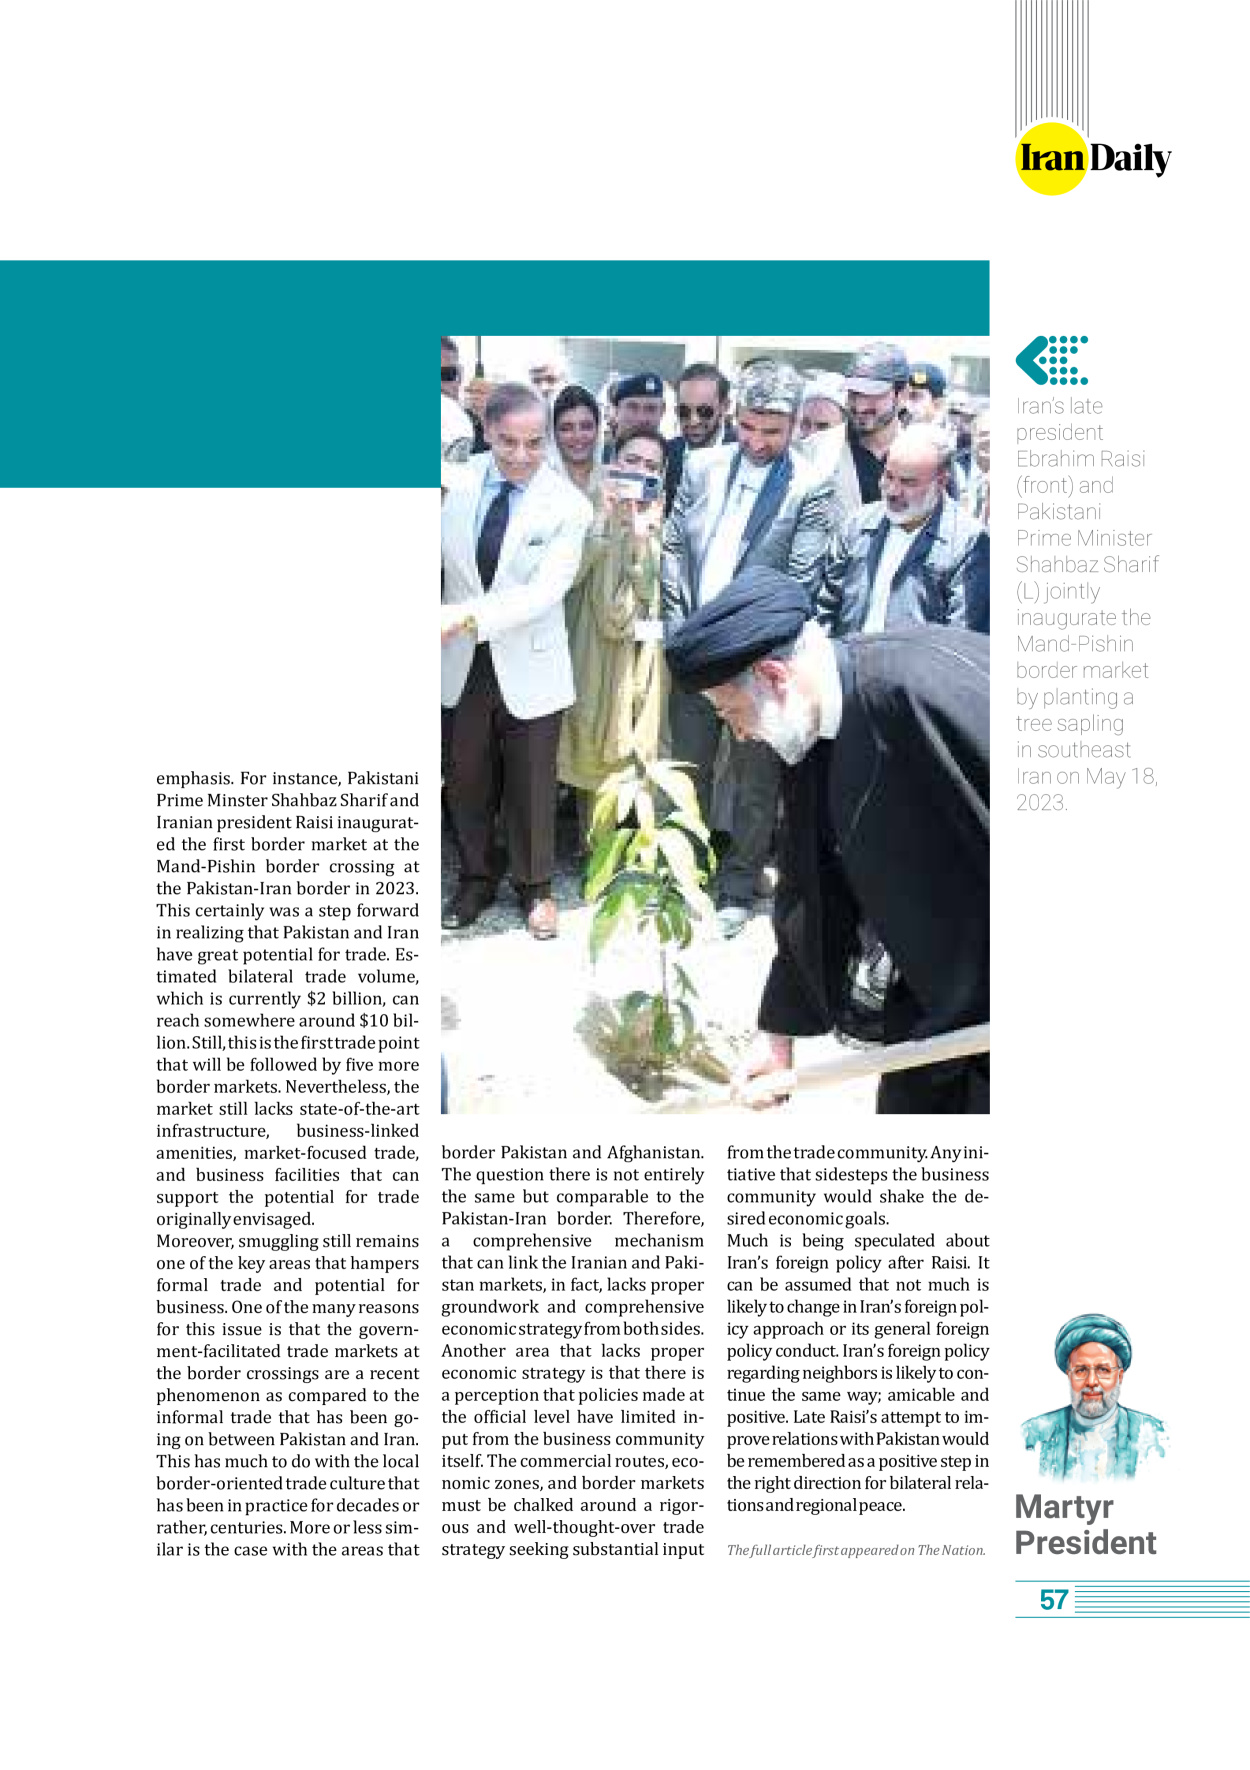 روزنامه ایران - ویژه نامه وِزه نامه چهلم شهید رییسی( انگلیسی) - ۱۷ تیر ۱۴۰۳ - صفحه ۵۷